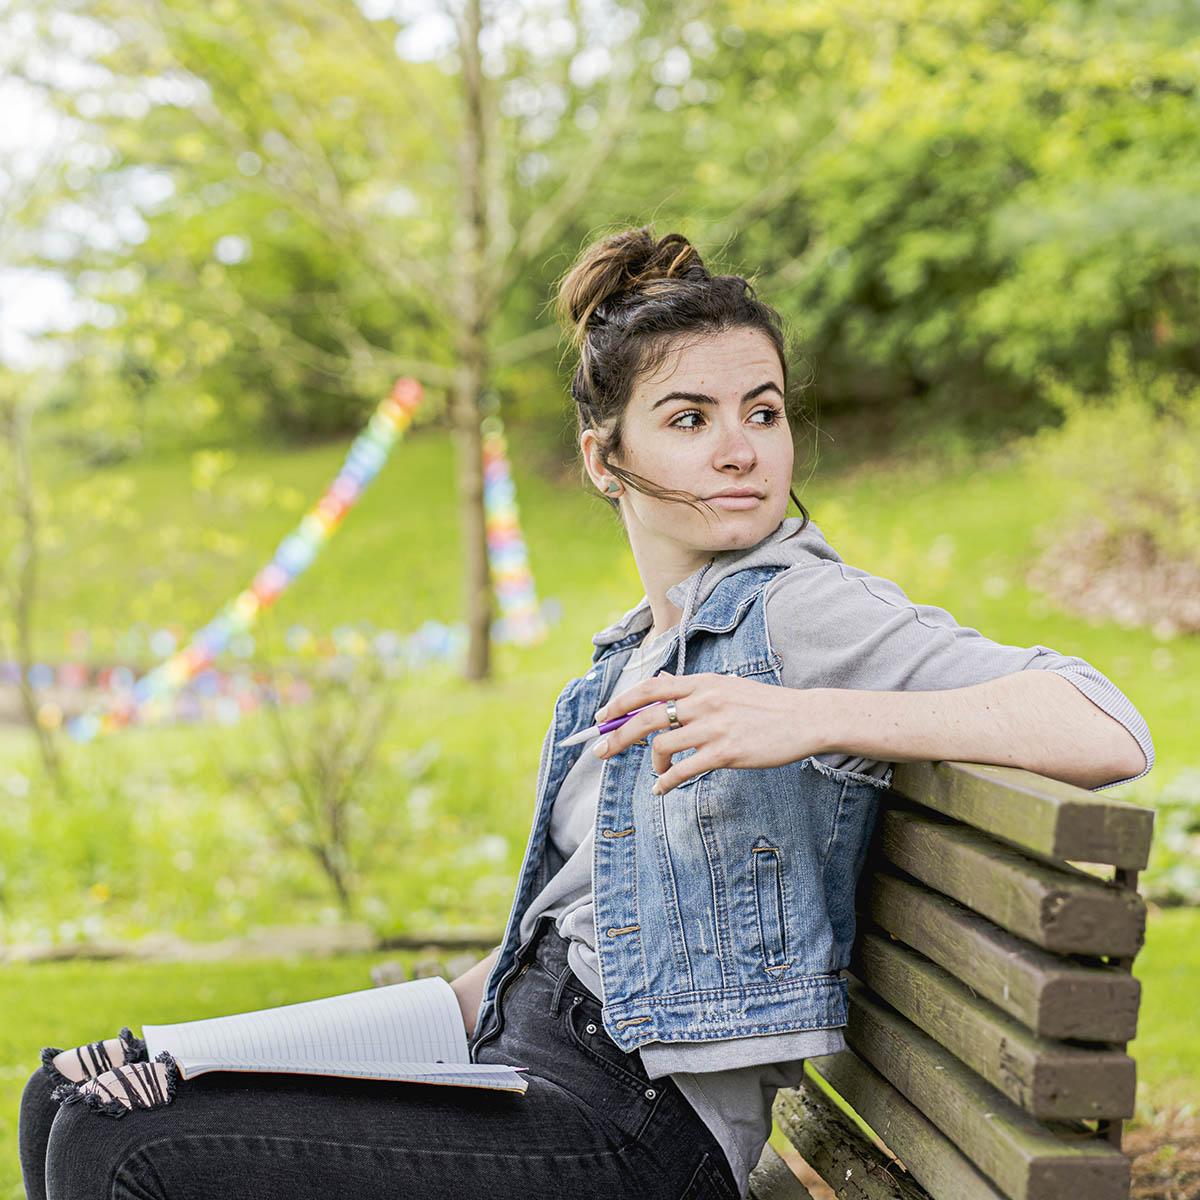 查塔姆学院一名女学生手里拿着铅笔的照片, 她坐在阴凉校园外的长凳上，膝上放着一本打开的笔记本